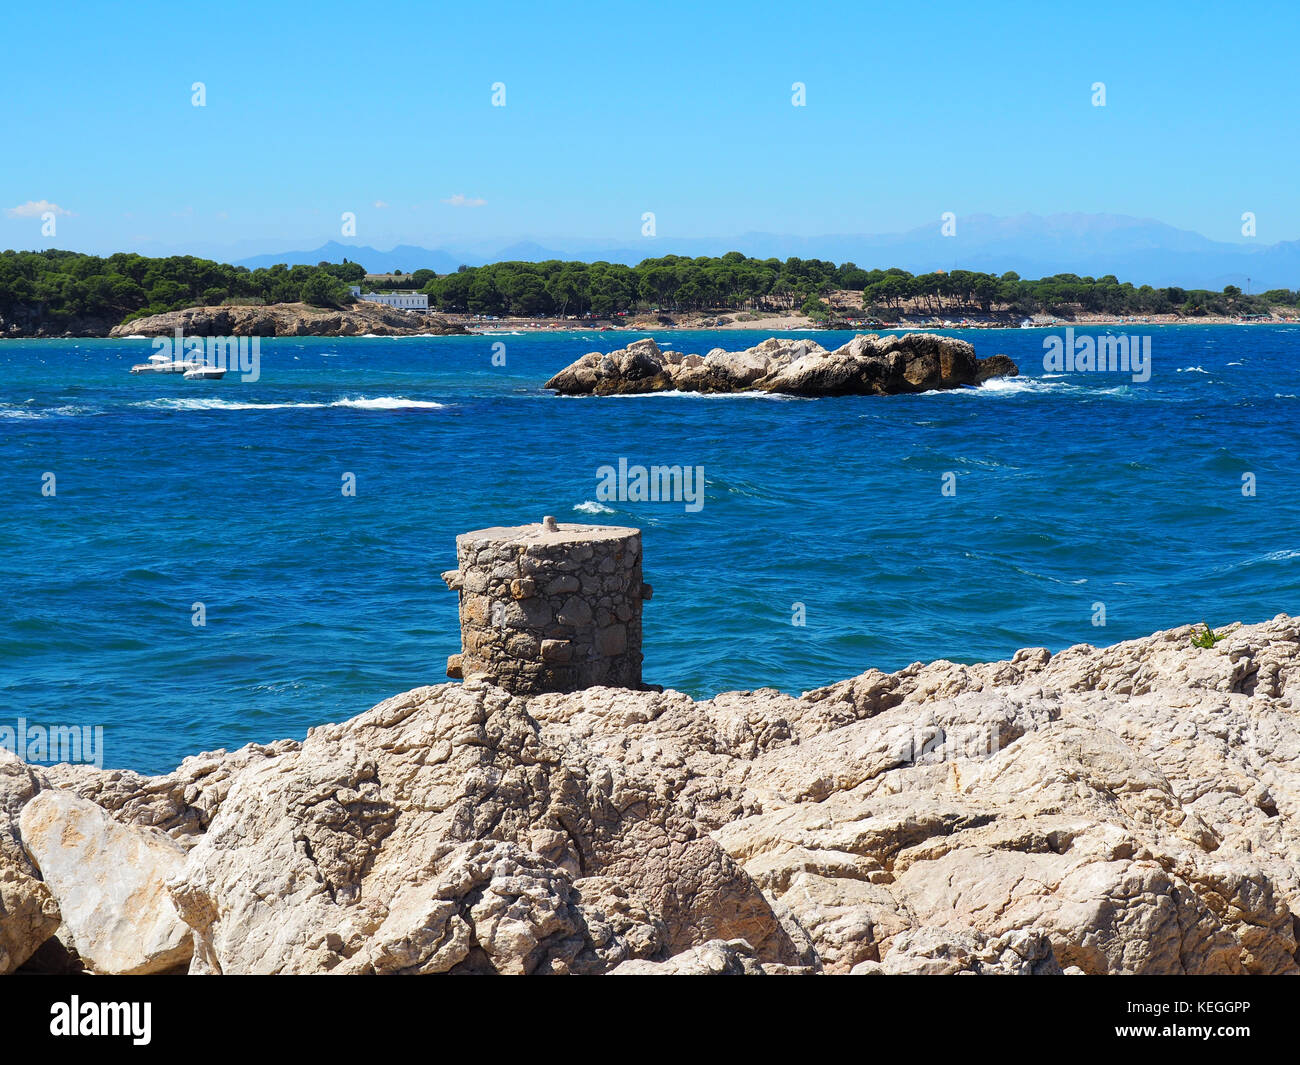 Paysage de la plage à l'escala, costa brava - Girona, Espagne Banque D'Images